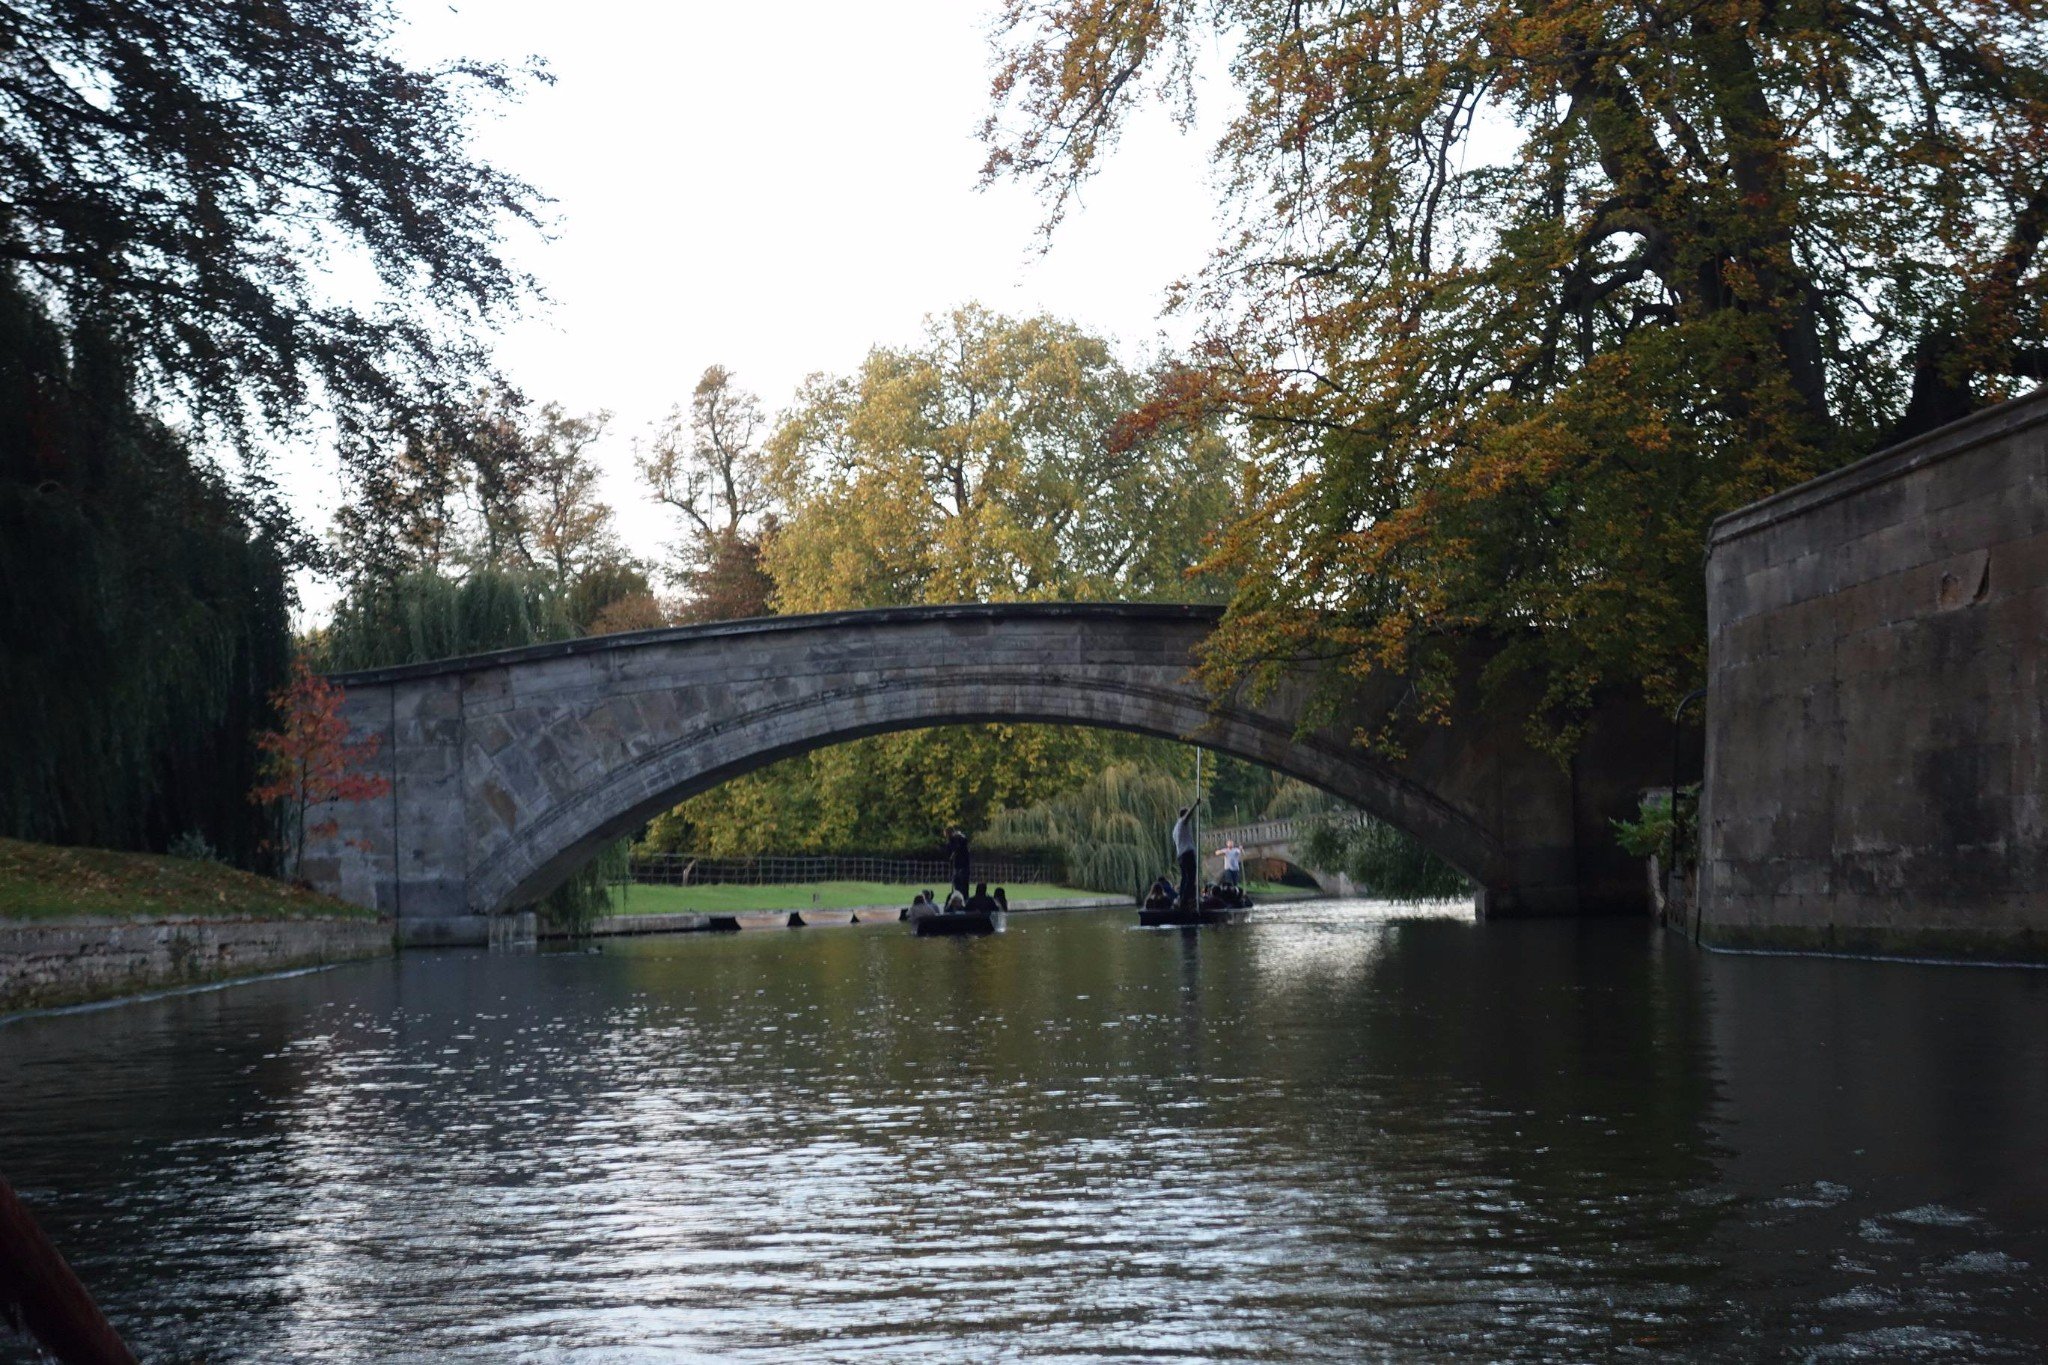 乘坐剑桥游船欣赏沿河的美景并享受一下剑桥泛舟的无穷意境这里绿茵